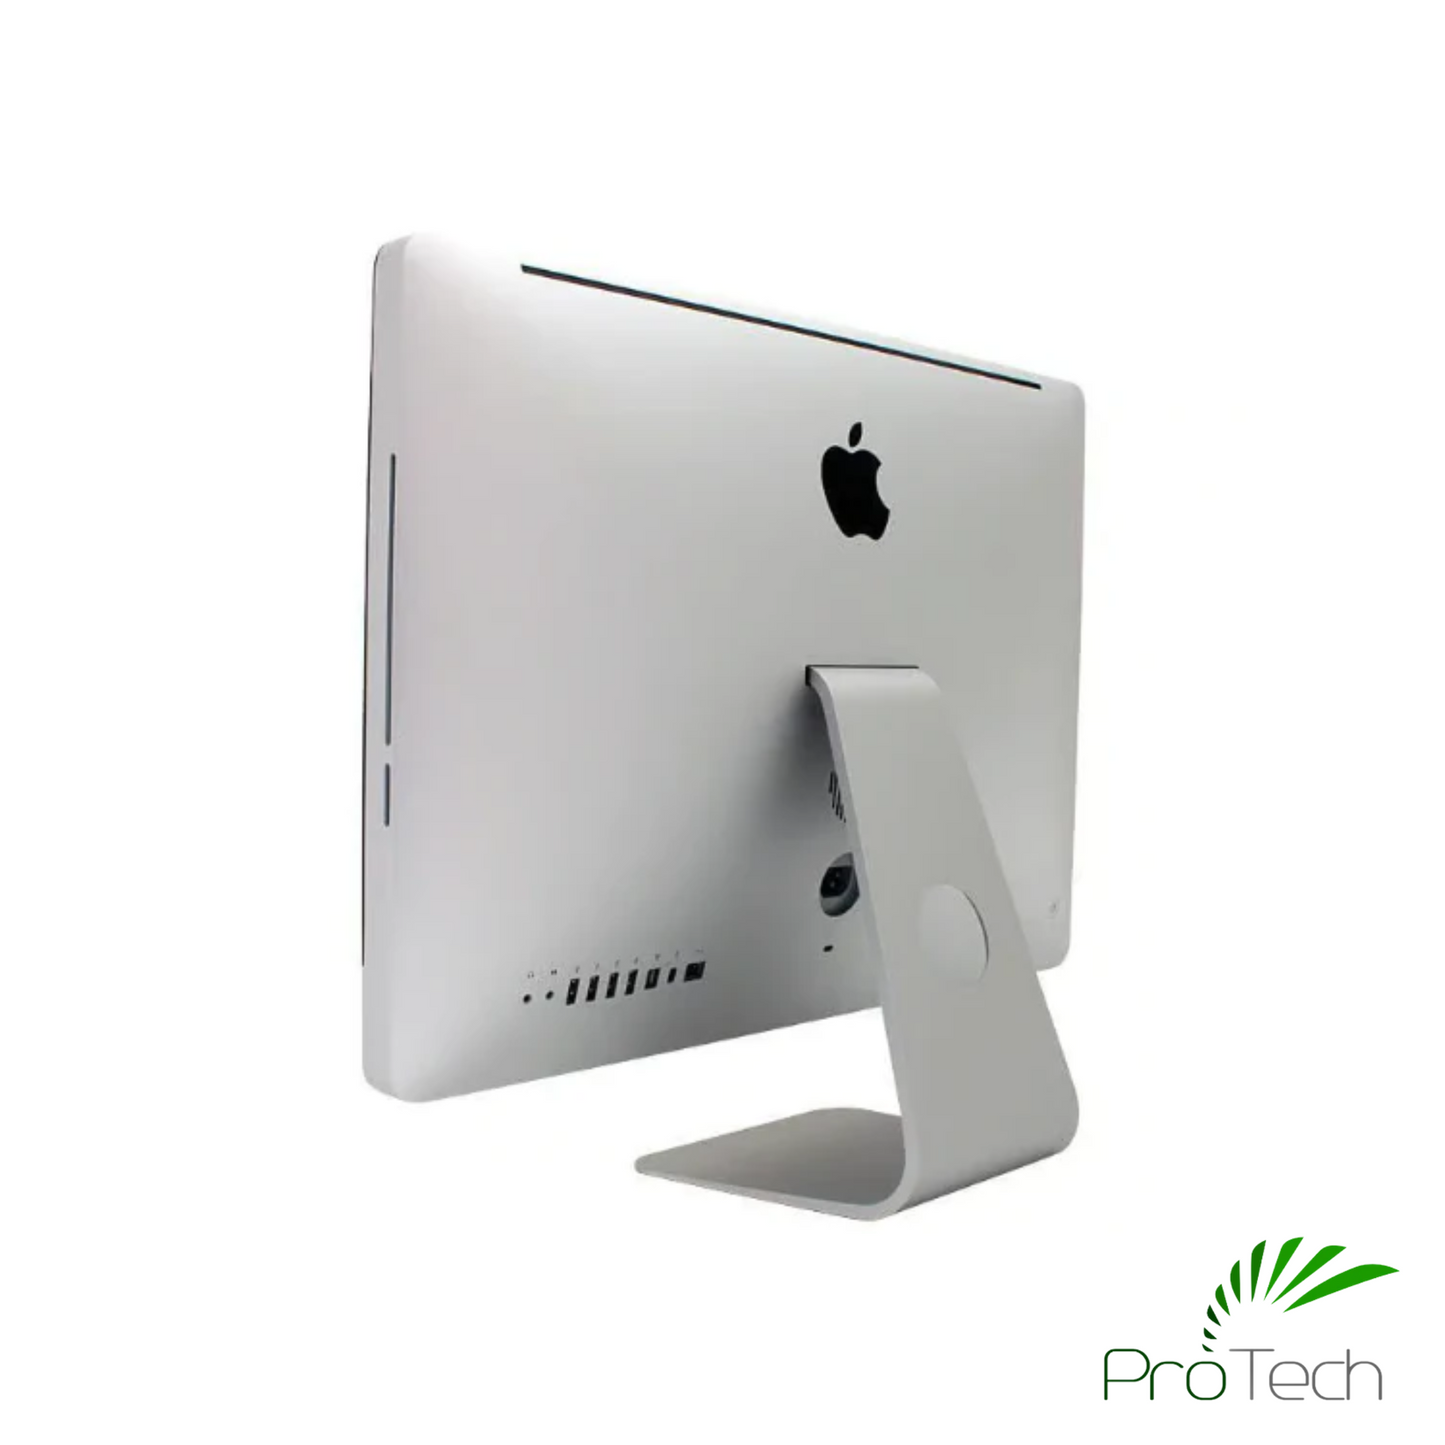 Apple iMac 21.5" (Mid 2011) | Core i5 | 4GB RAM | 500GB SSD